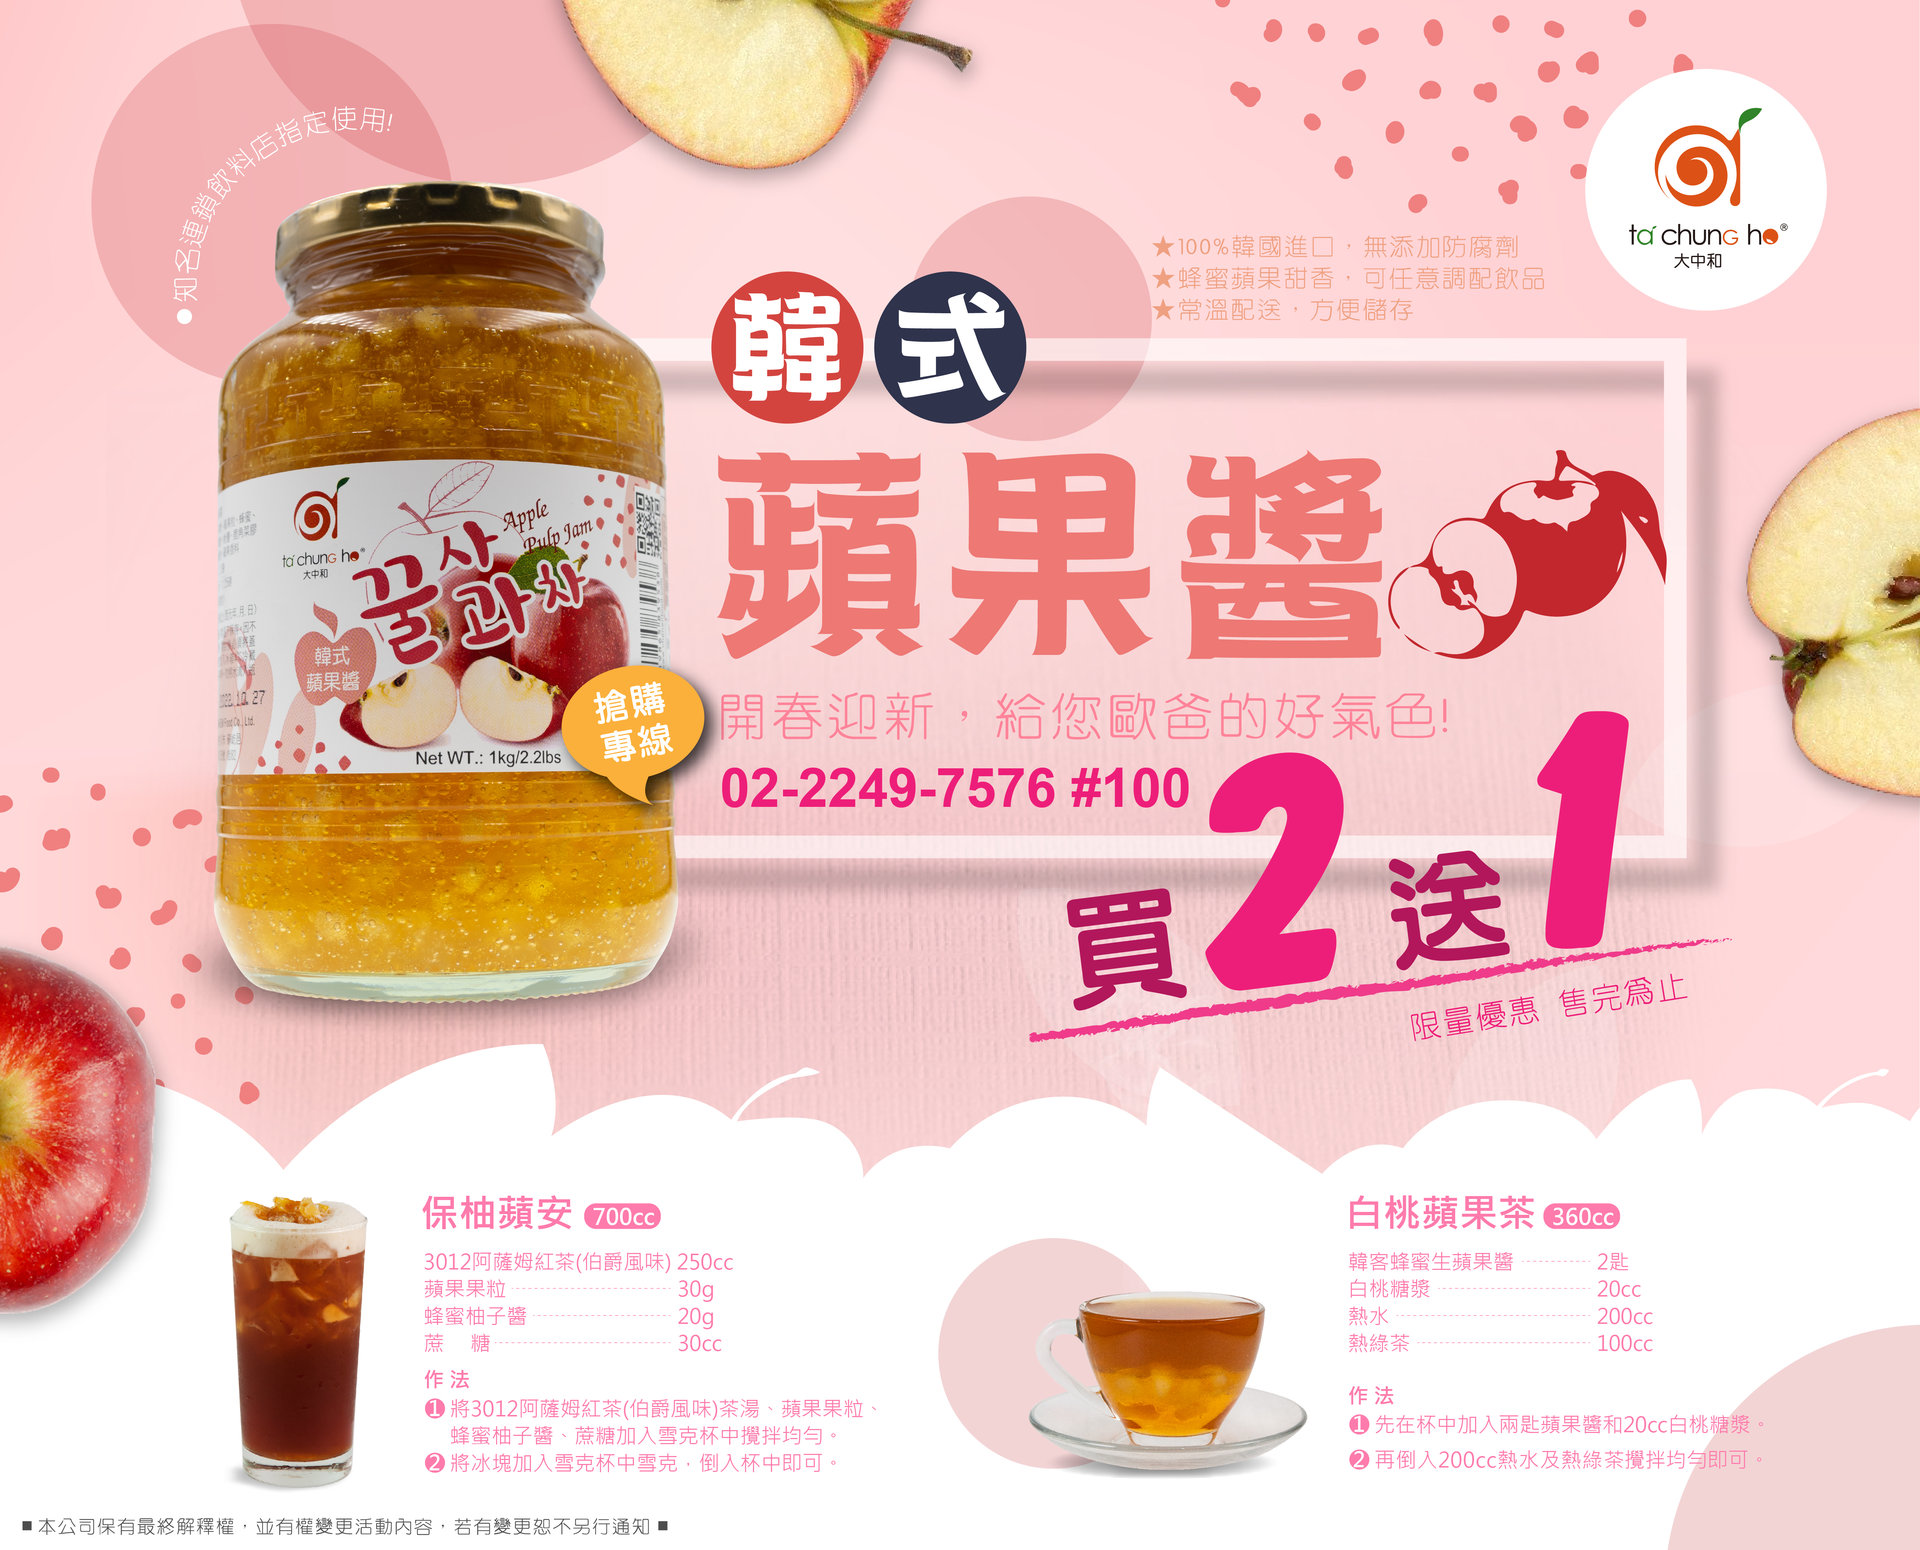 【促銷活動】 韓式蘋果醬買2送1！限量優惠！給您歐巴好氣色！